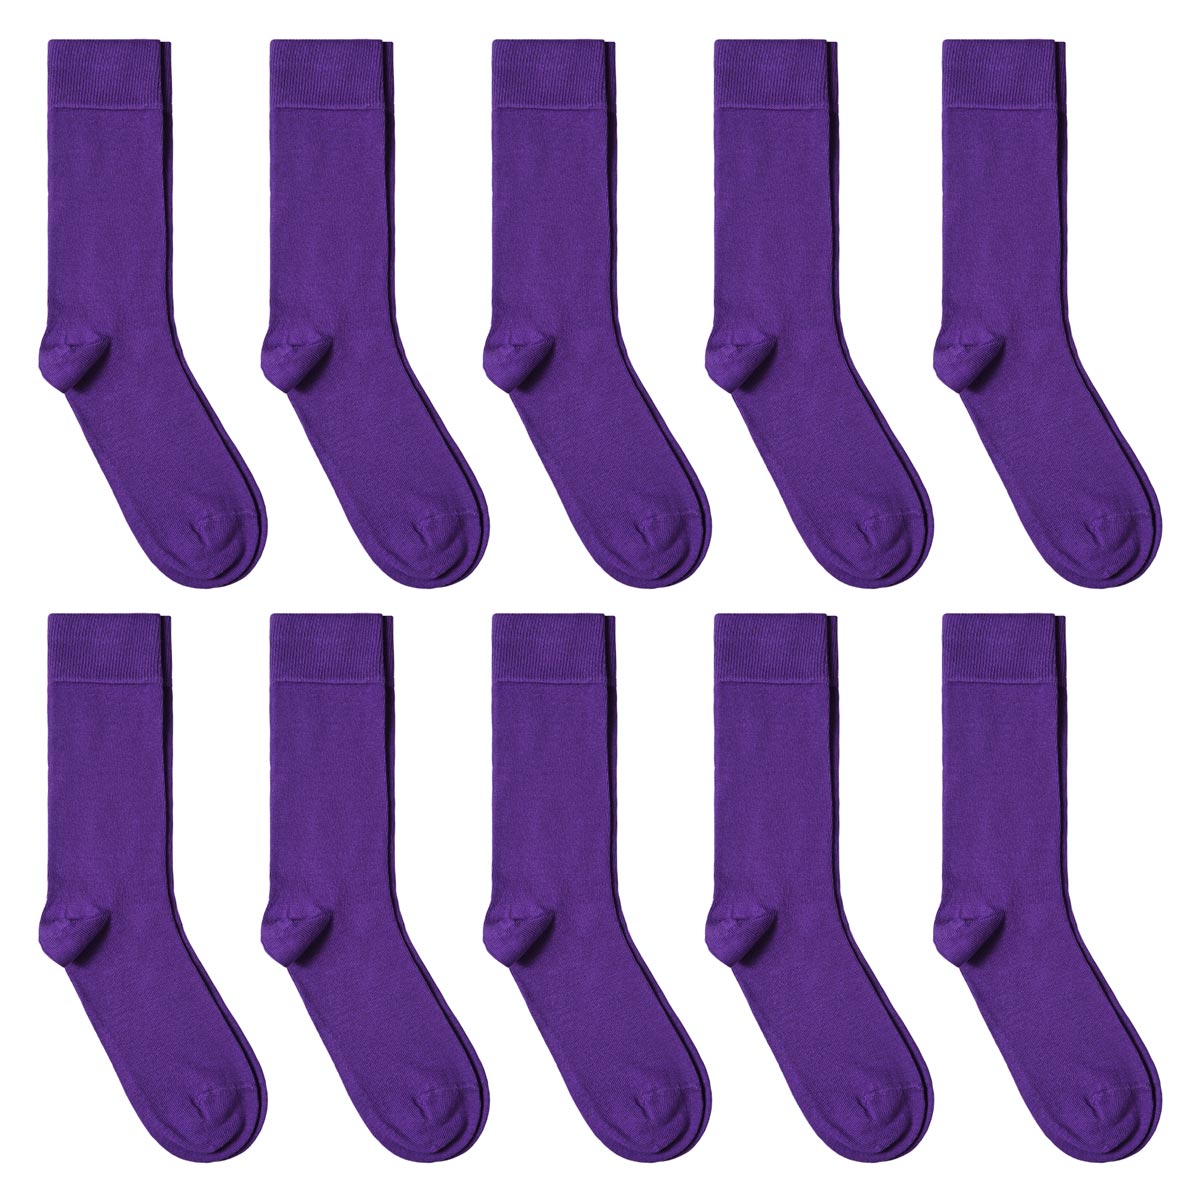 CH-00607_A12-1--_Lot-10-paires-de-chaussettes-homme-violettes-unies